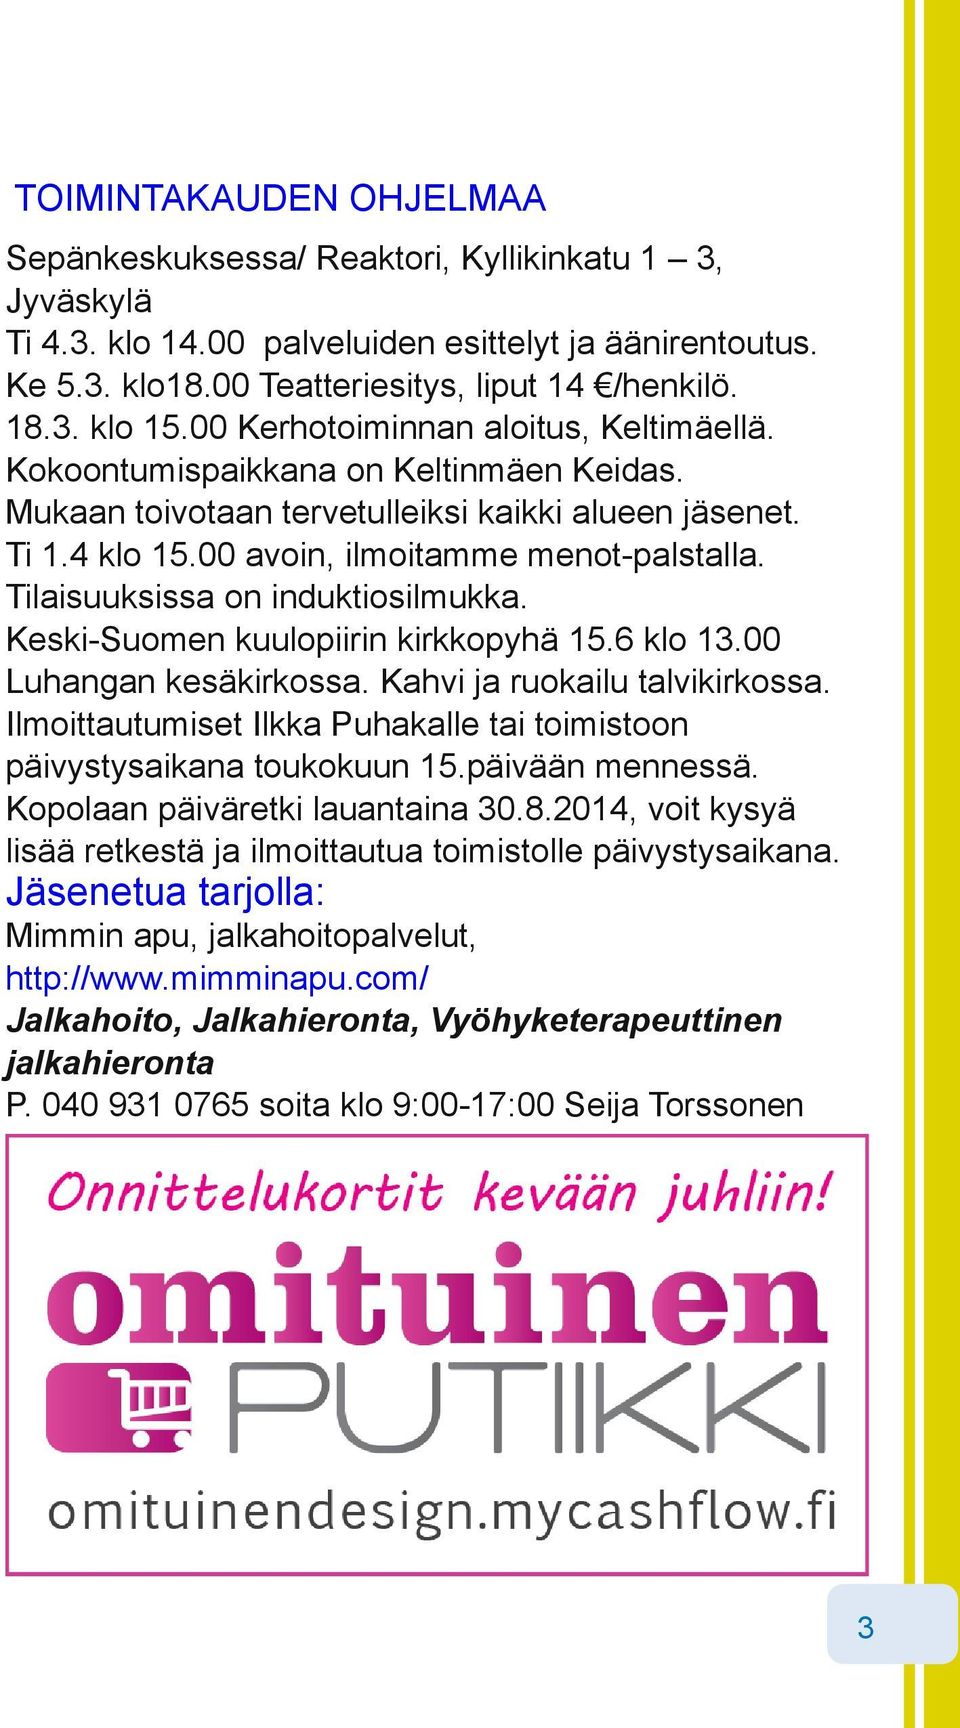 Tilaisuuksissa on induktiosilmukka. Keski Suomen kuulopiirin kirkkopyhä 15.6 klo 13.00 Luhangan kesäkirkossa. Kahvi ja ruokailu talvikirkossa.